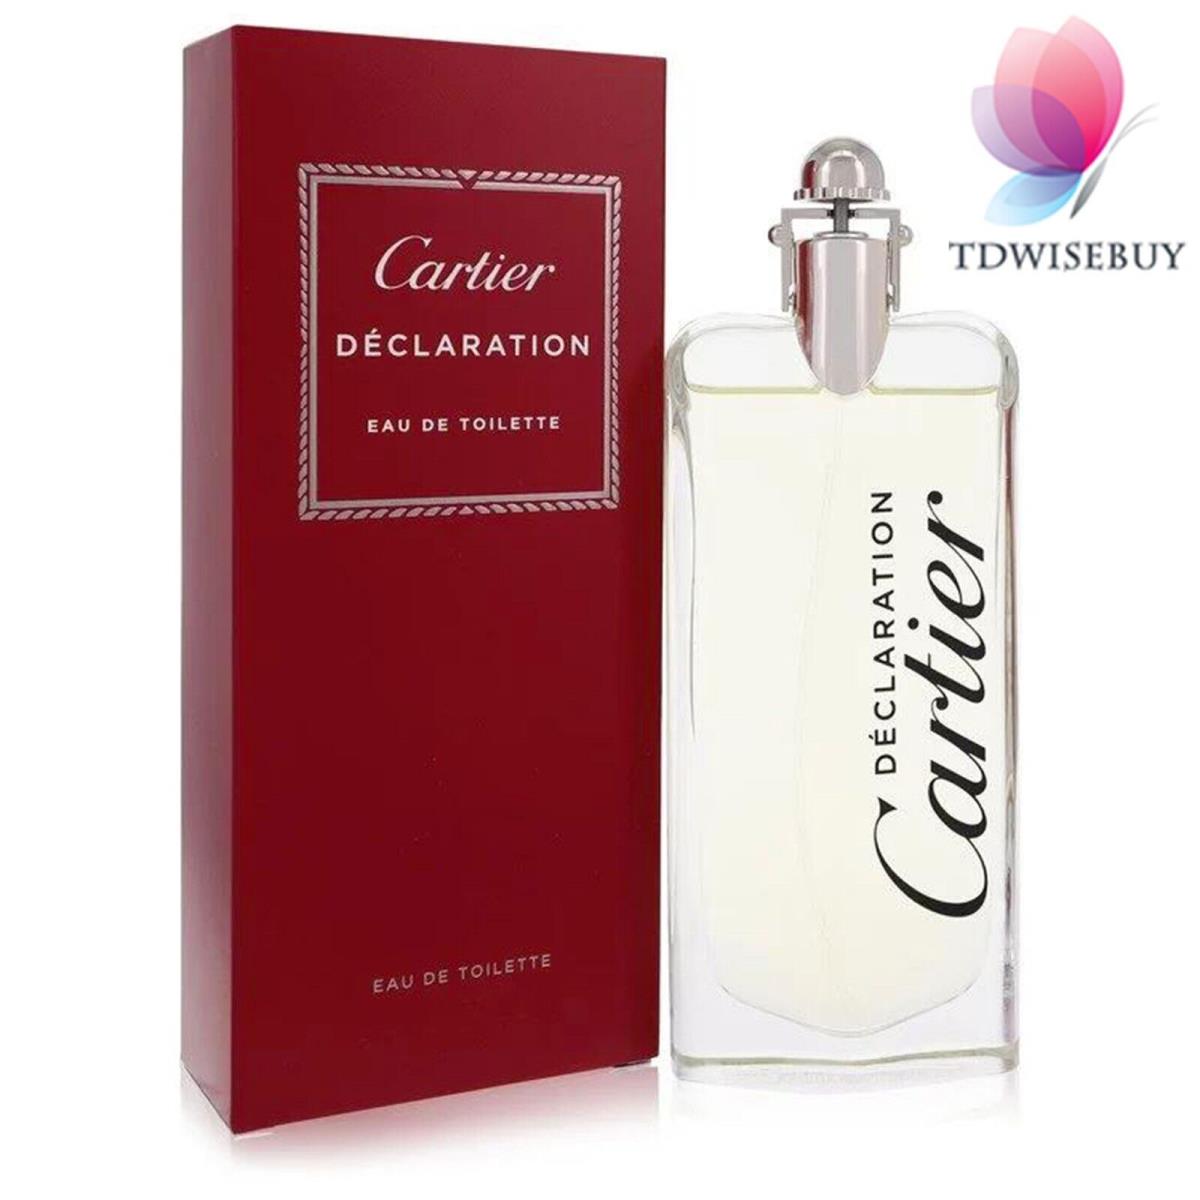 Declaration Cologne Men Perfume by Cartier Eau De Toilette Spray 3.3 oz 100 ml